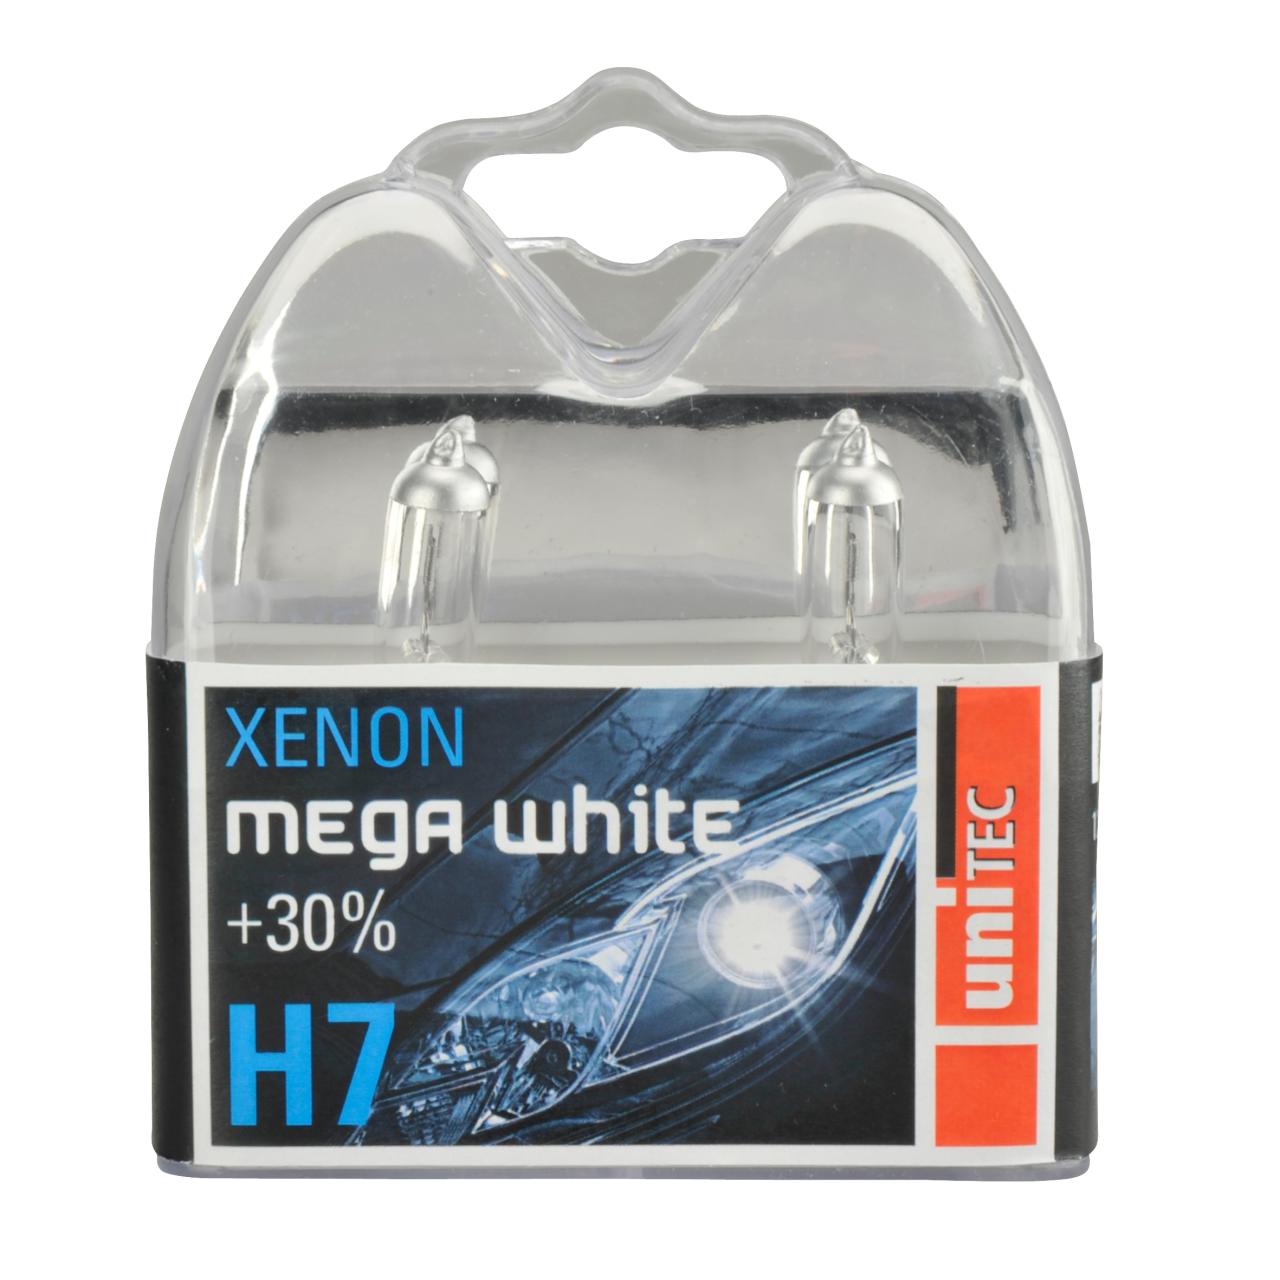  XENON H7 AUTOLAMPE MEGA WHITE 12V 55W UNITE